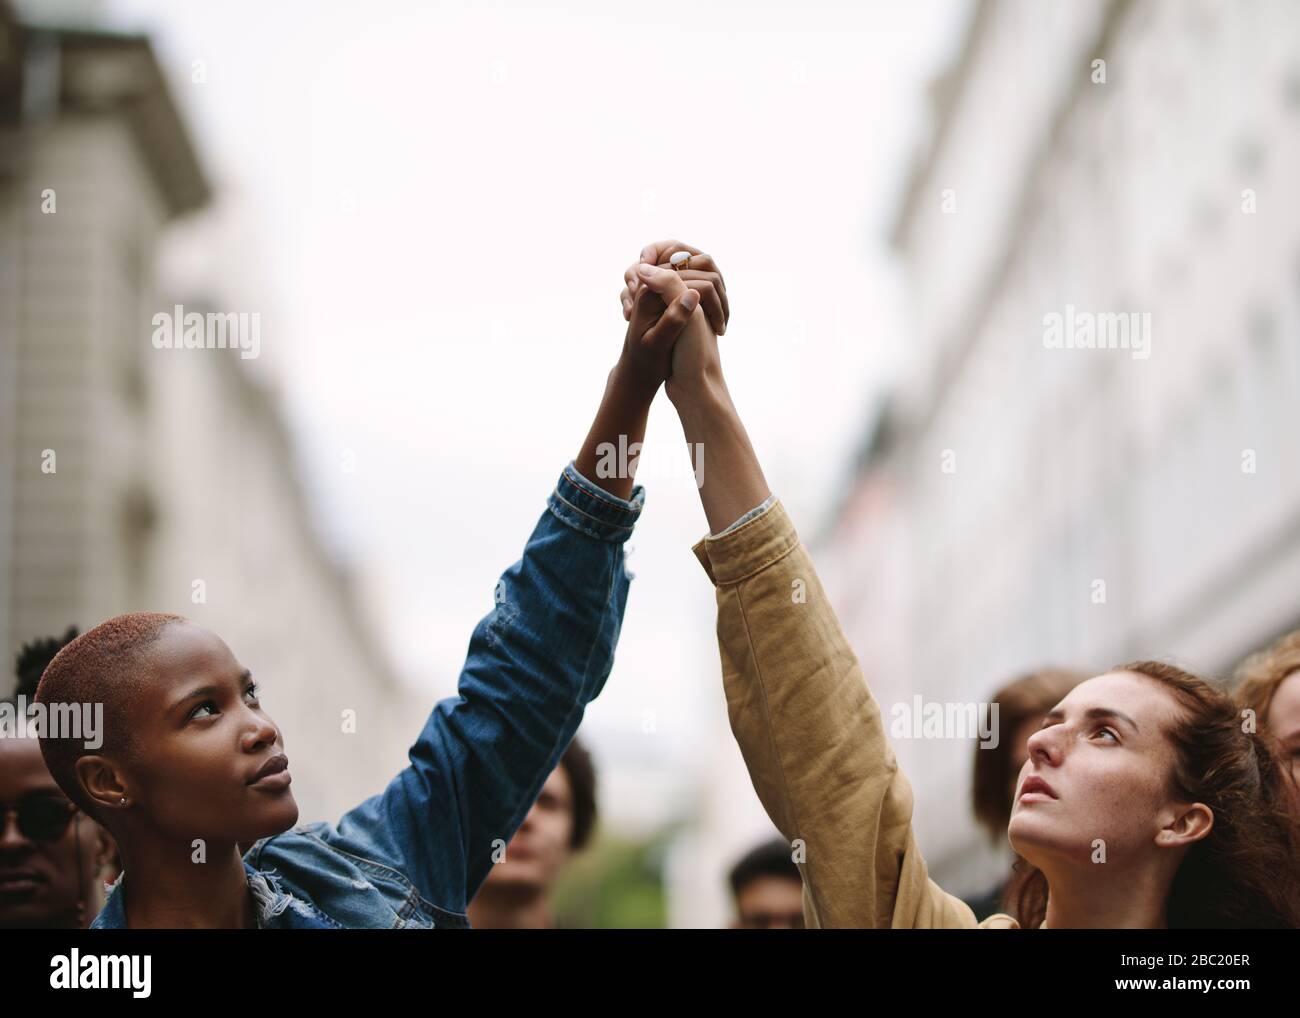 Zwei Frauenaktivisten halten Hände und protestieren. Demonstranten demonstrieren auf der Straße und halten die Hände. Stockfoto